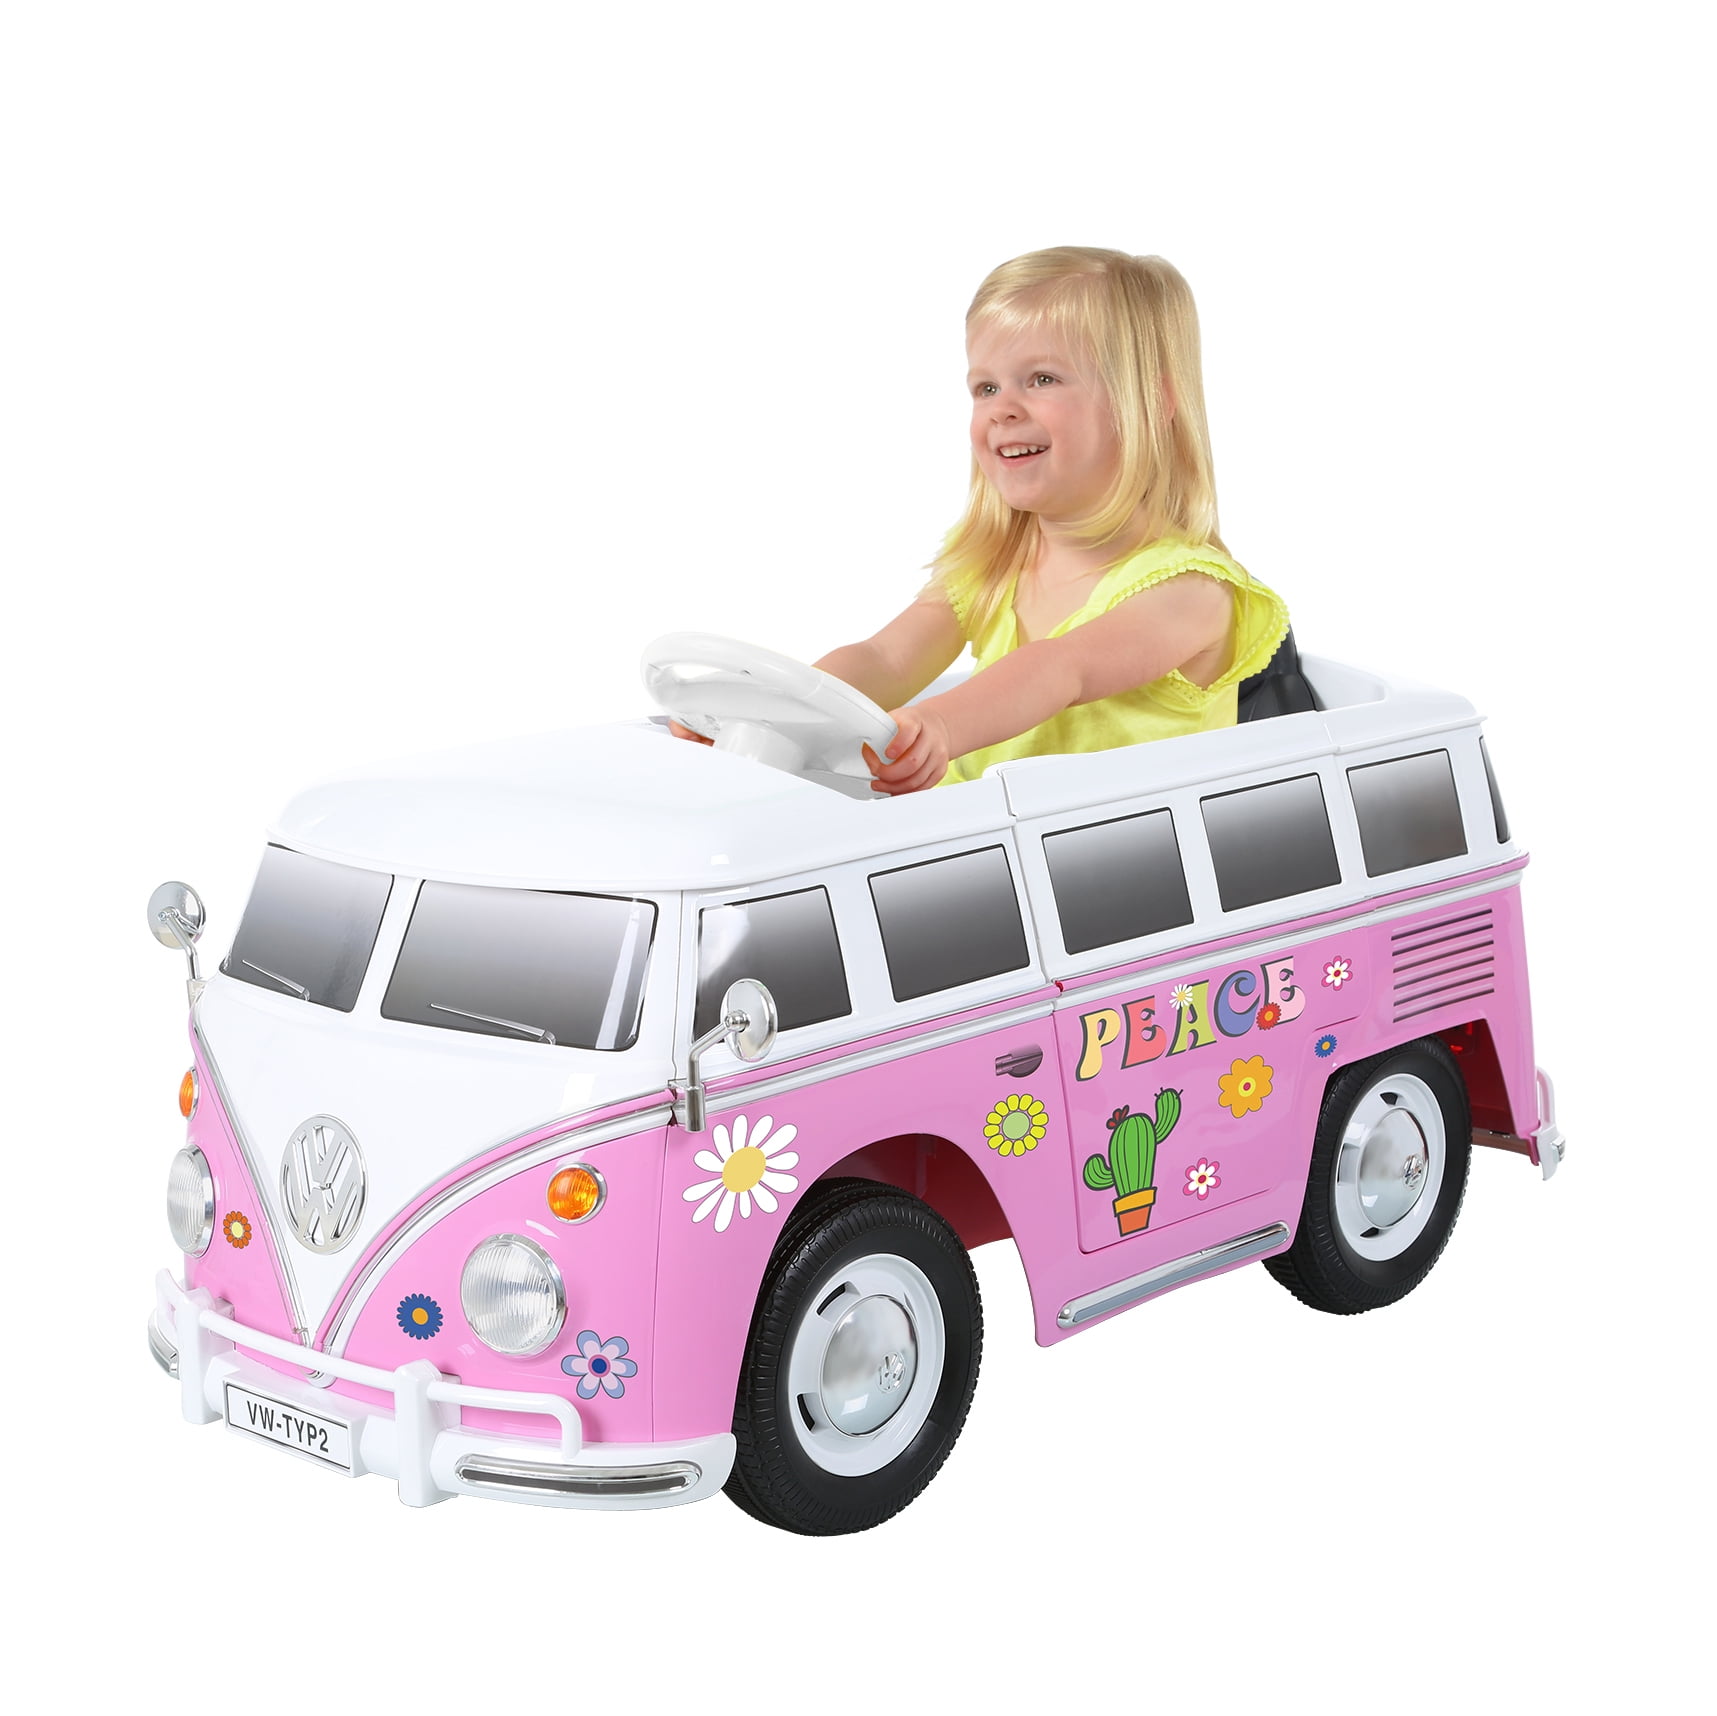 Fino a max Furgoncino VW T1 Per bambini da 1 anno in su ROLLPLAY Macchina a spinta 20 kg Blu Typ 2